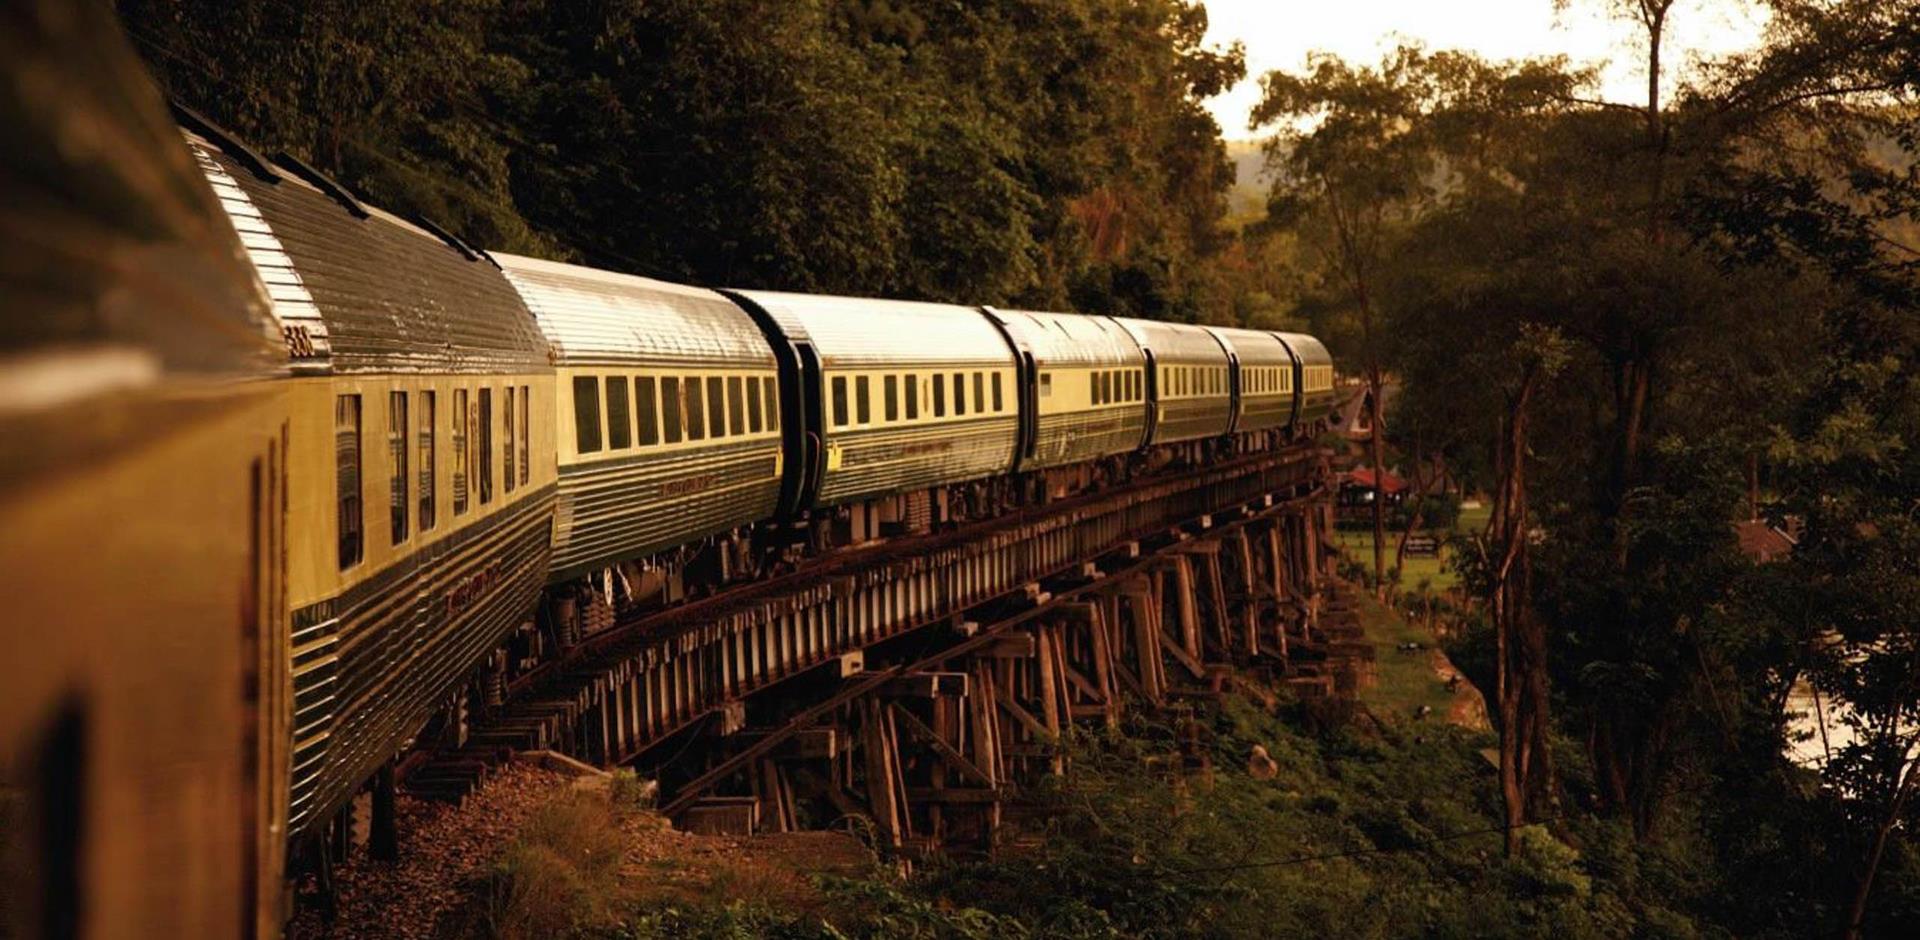 The Eastern & Oriental Train, Abercrombie & Kent